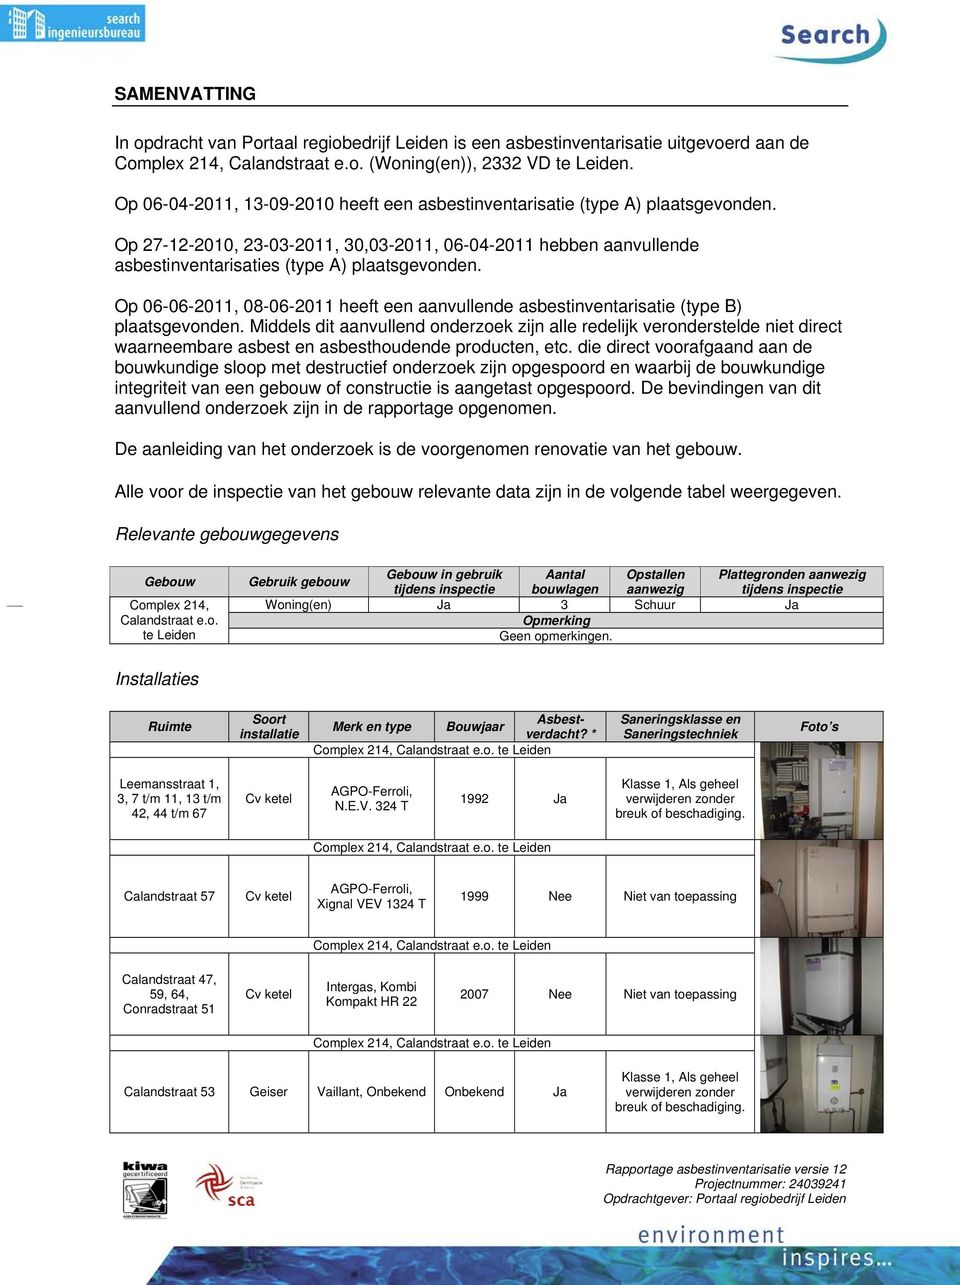 Op 06-06-2011, 08-06-2011 heeft een aanvullende asbestinventarisatie (type B) plaatsgevonden.